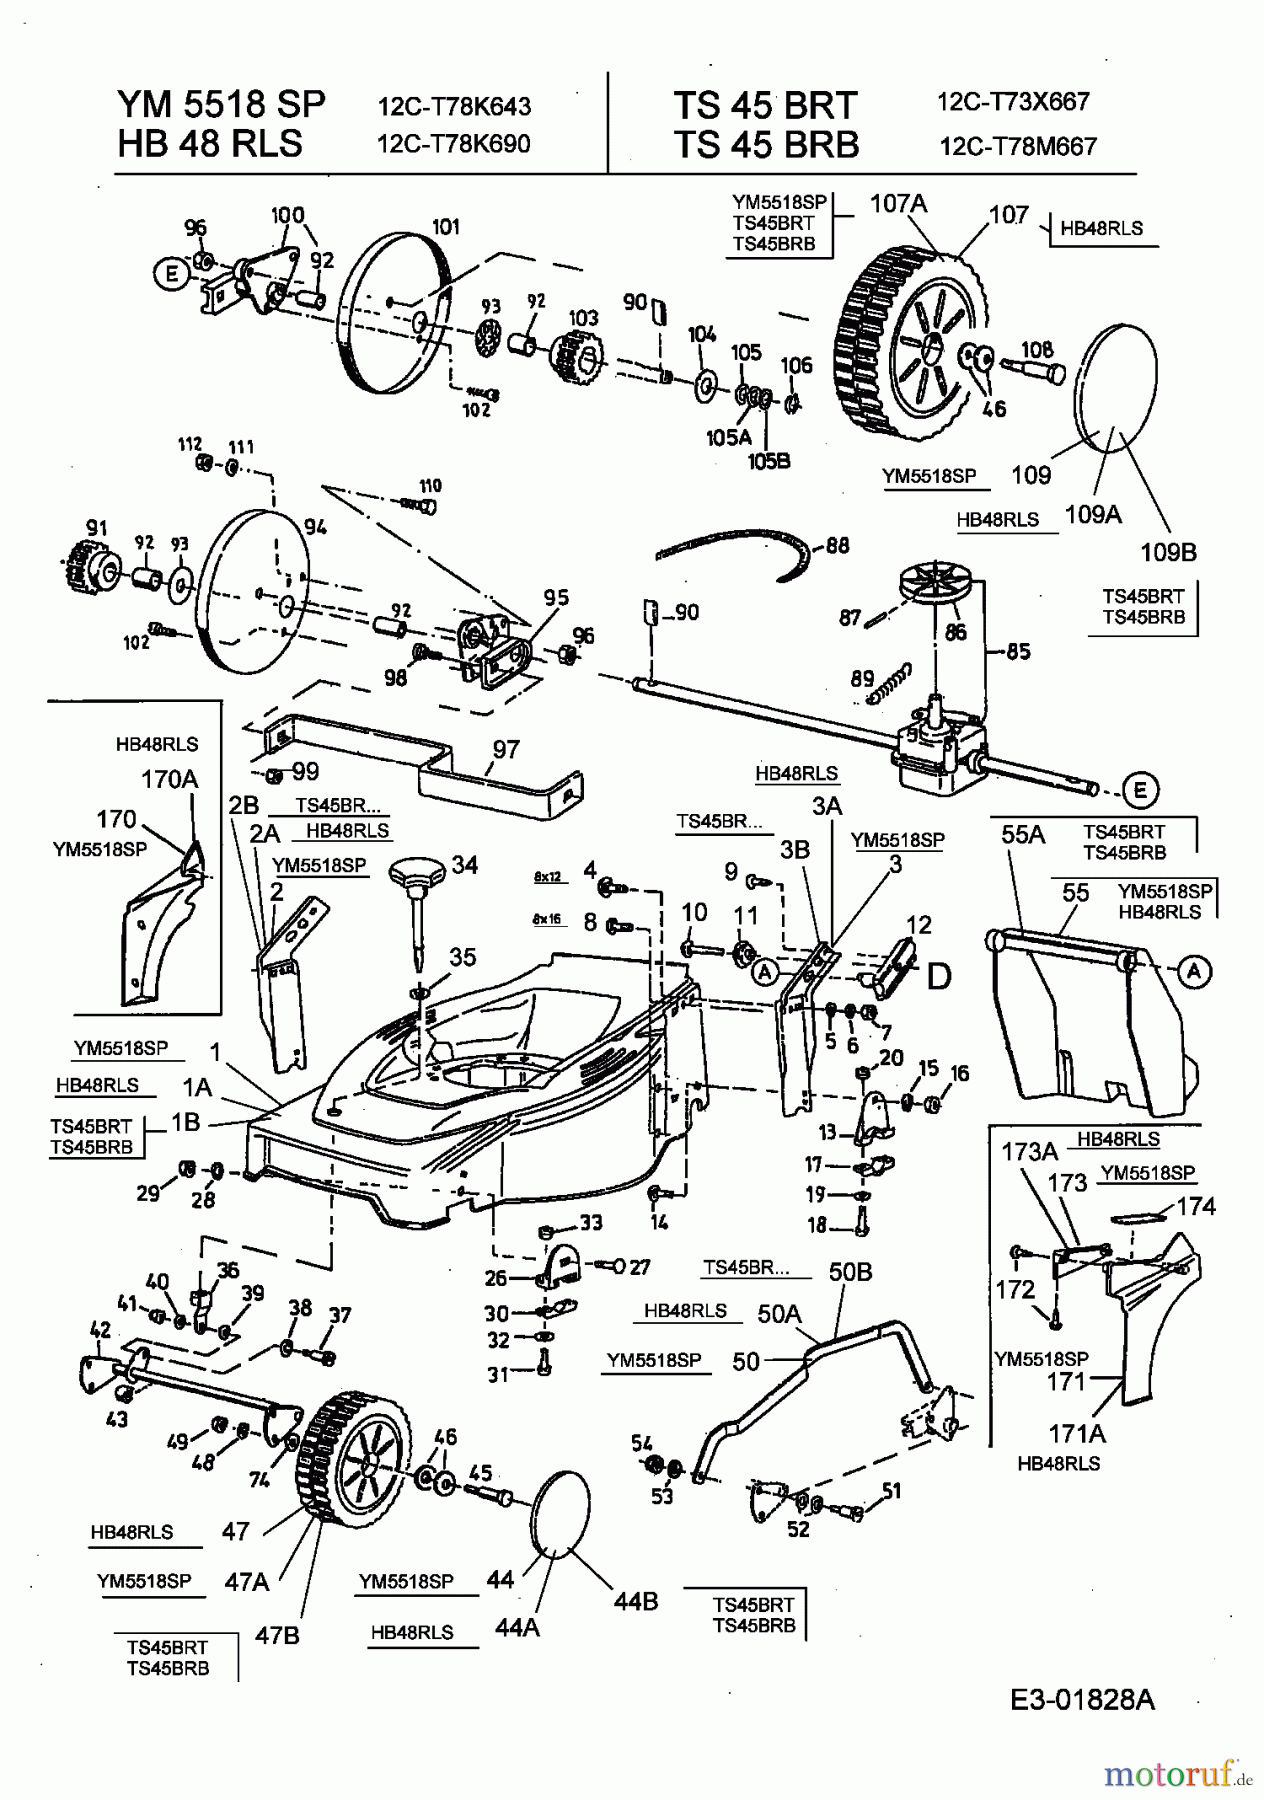  Turbo Silent Motormäher mit Antrieb TS 45 BR-B 12C-T78M667  (2003) Getriebe, Räder, Schnitthöhenverstellung